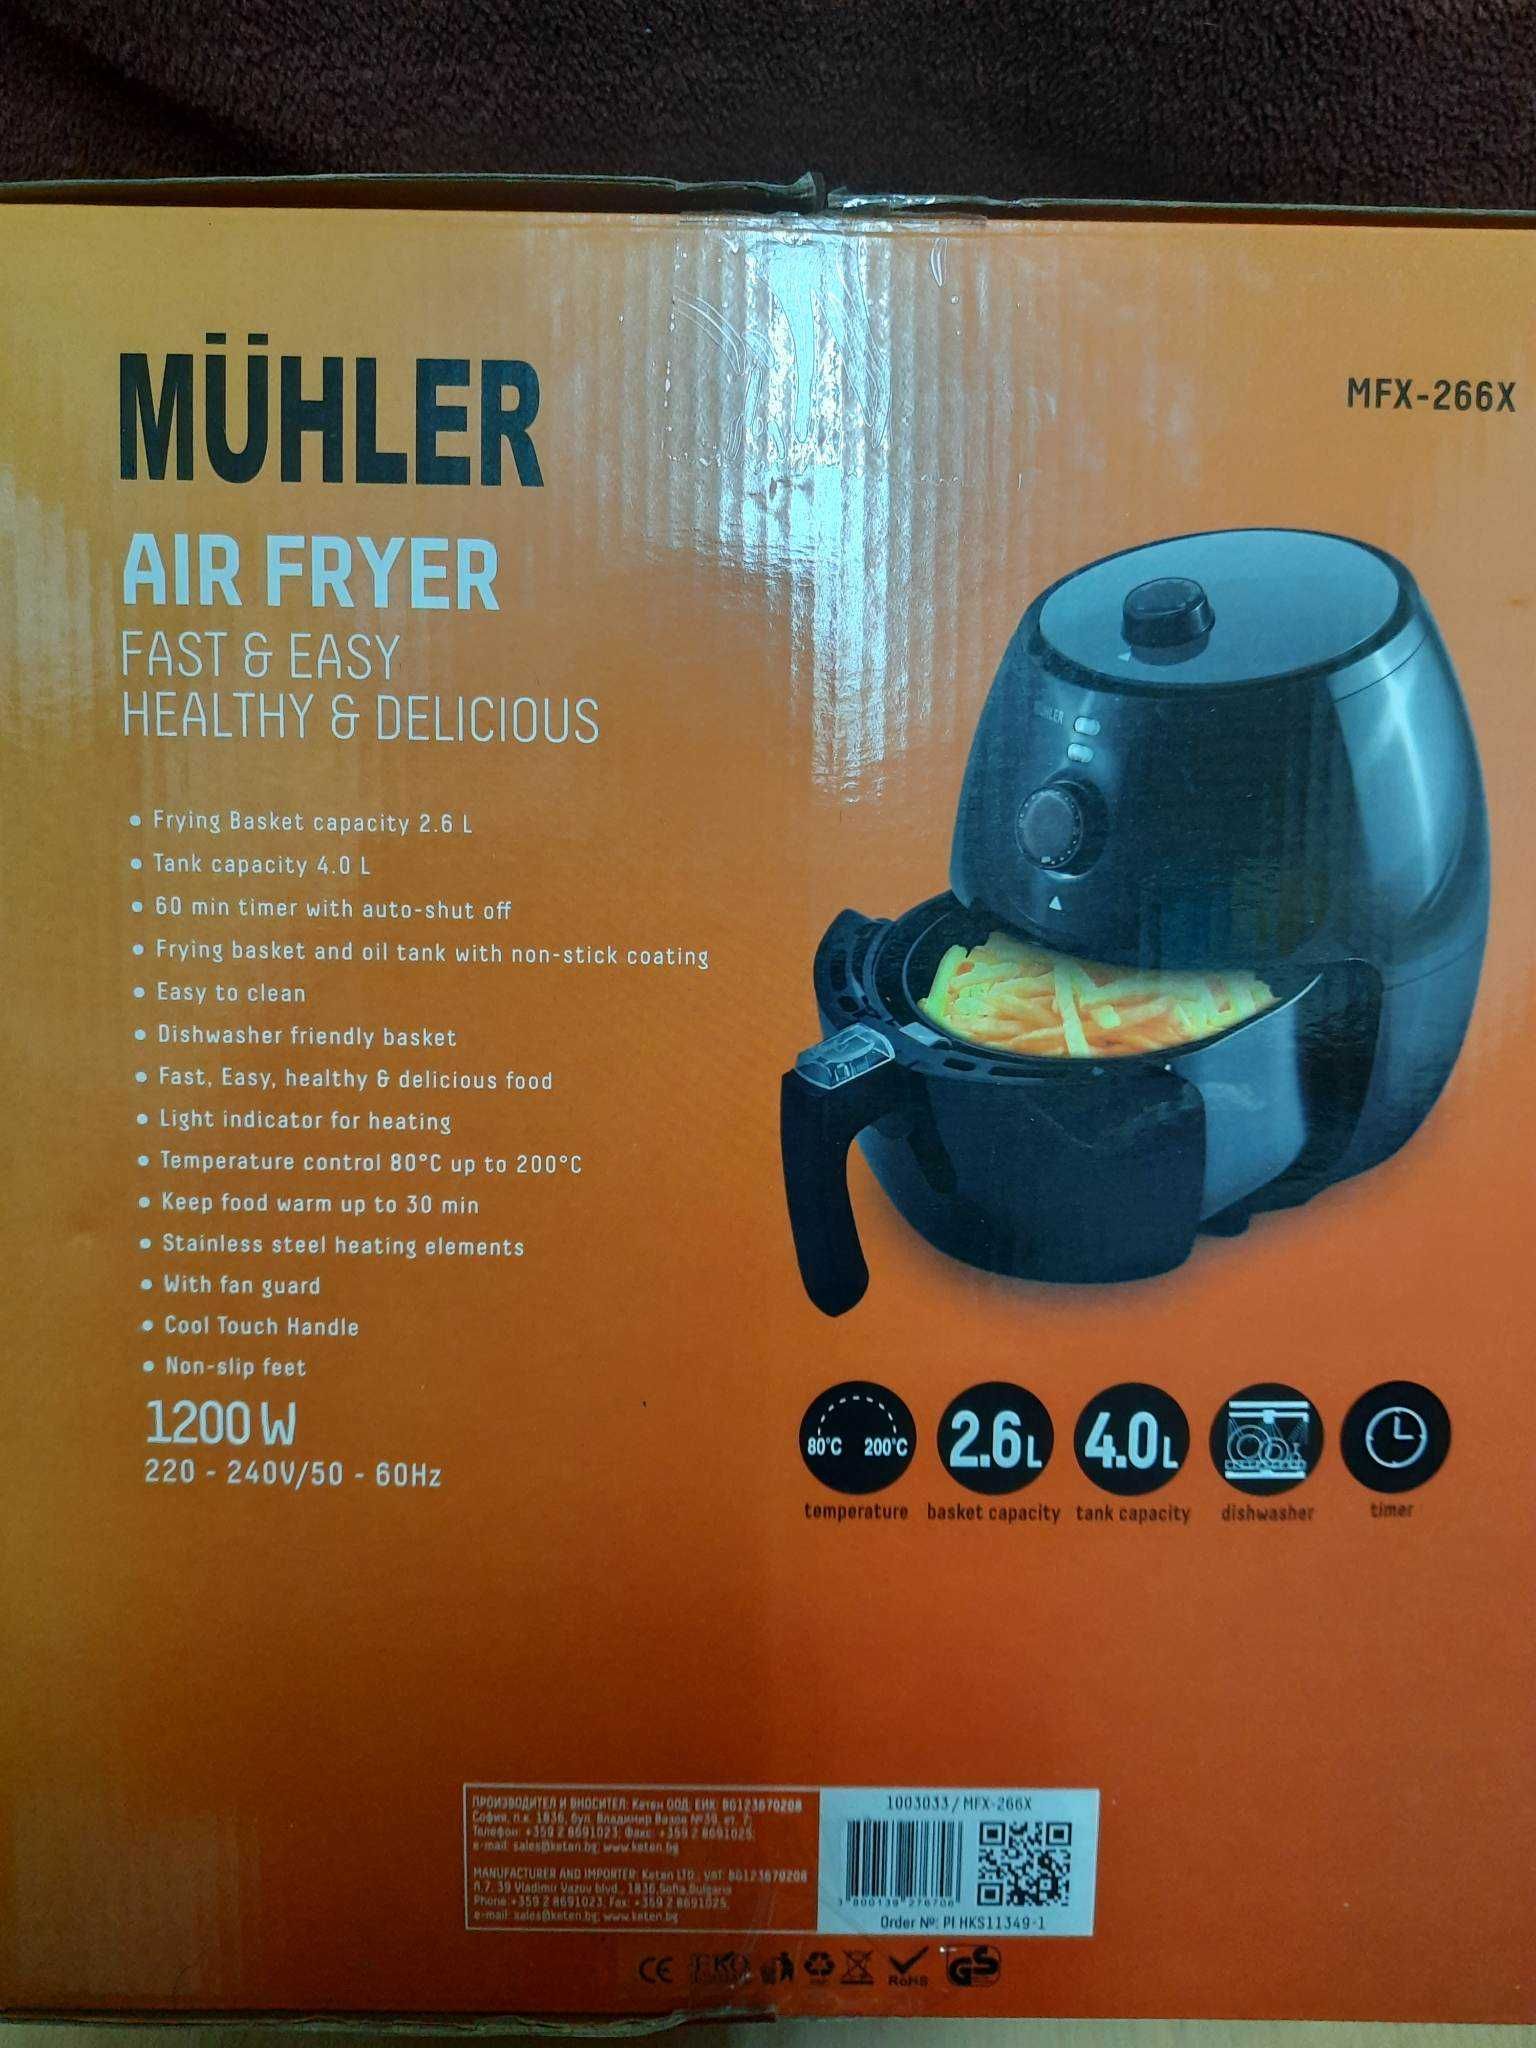 Еър фрайер MUHLER, до 200 градуса, 4 литра капацитет, 2,6 л кошница